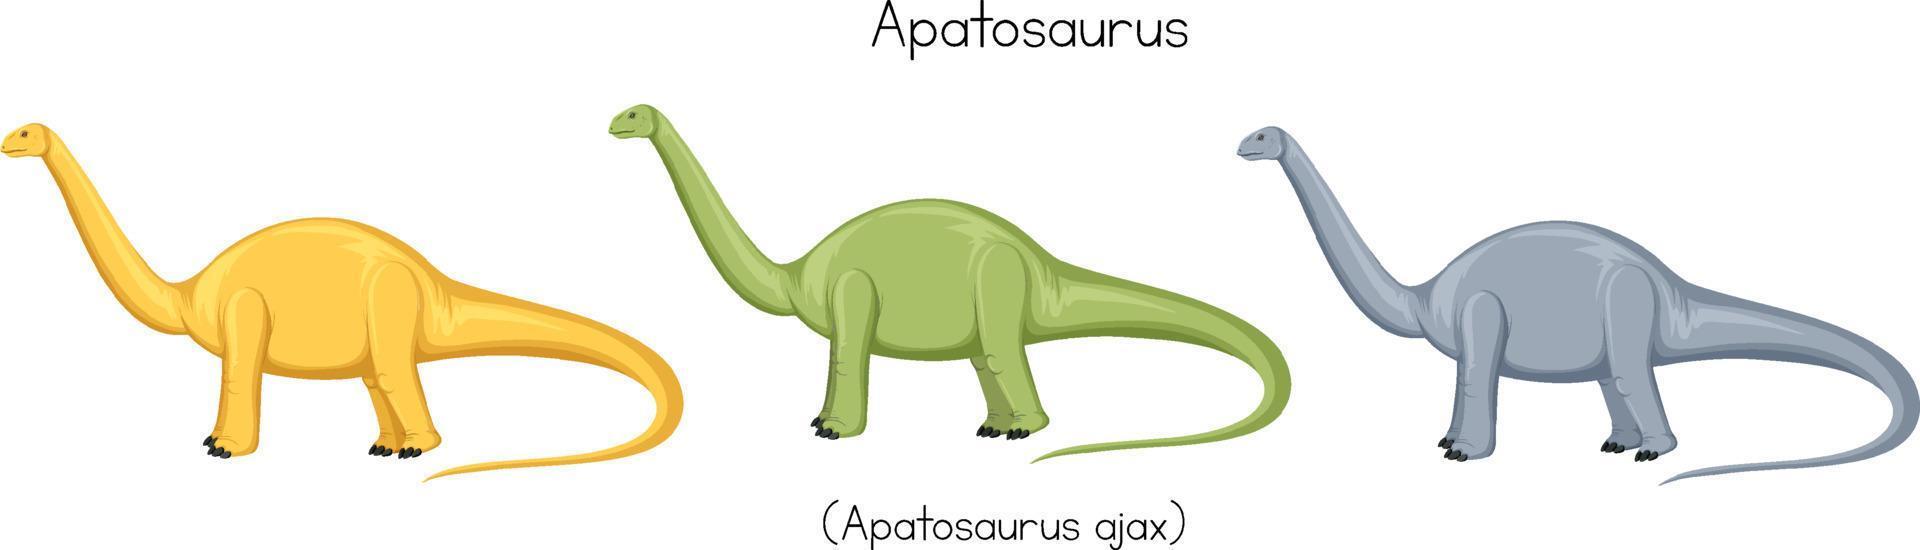 apatosauro in tre colori vettore